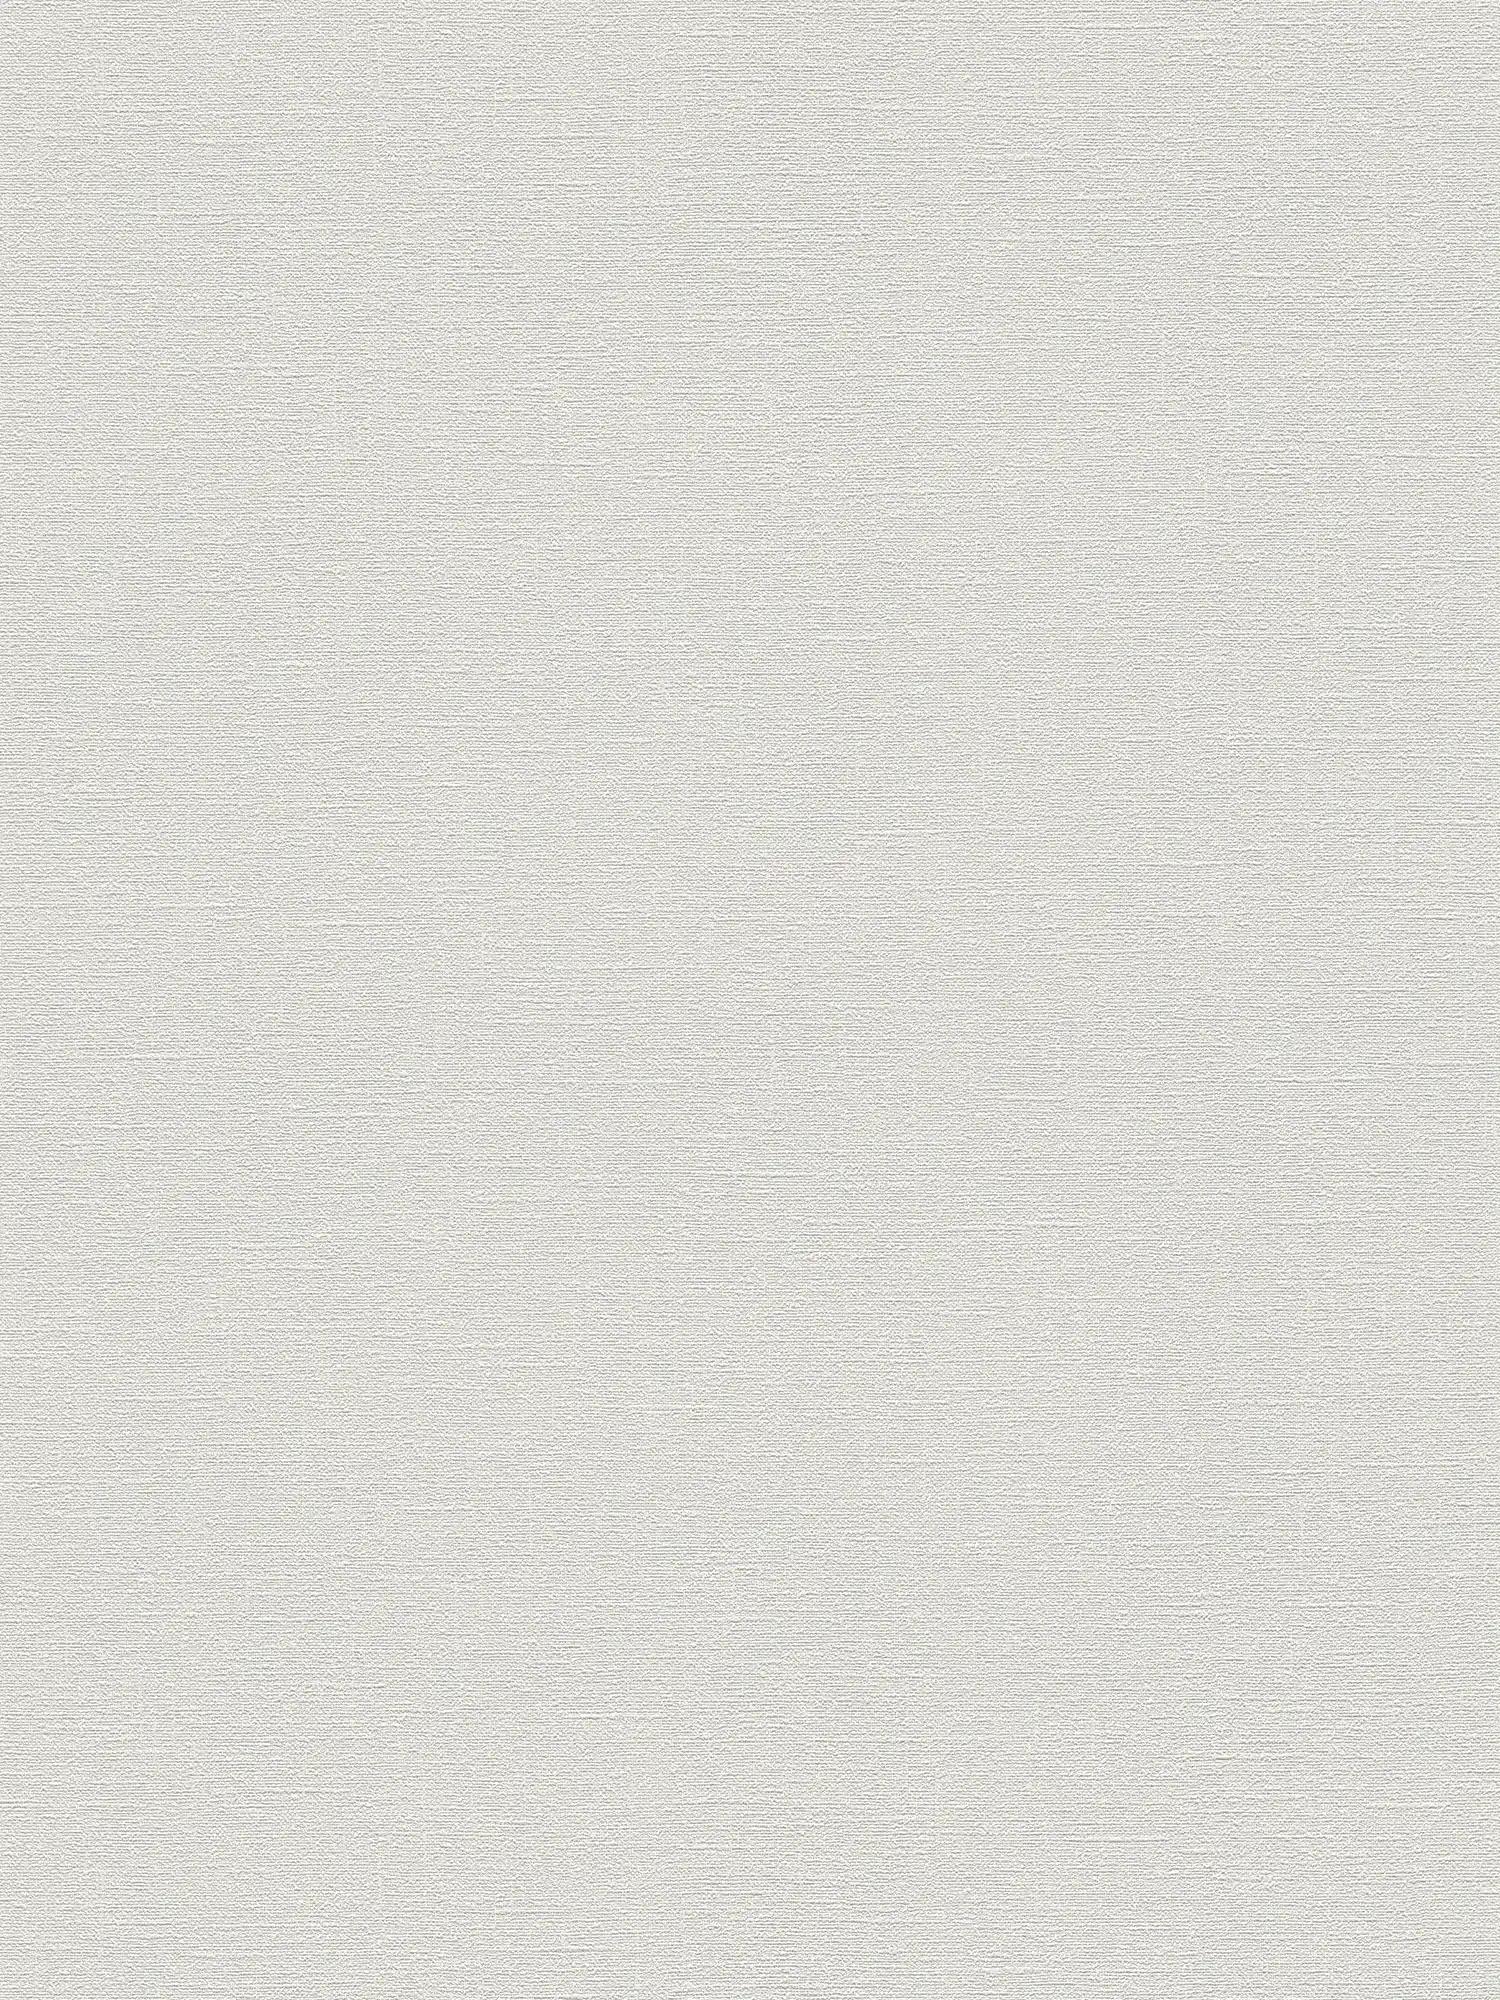 Fine textured wallpaper PVC-free - grey, white
